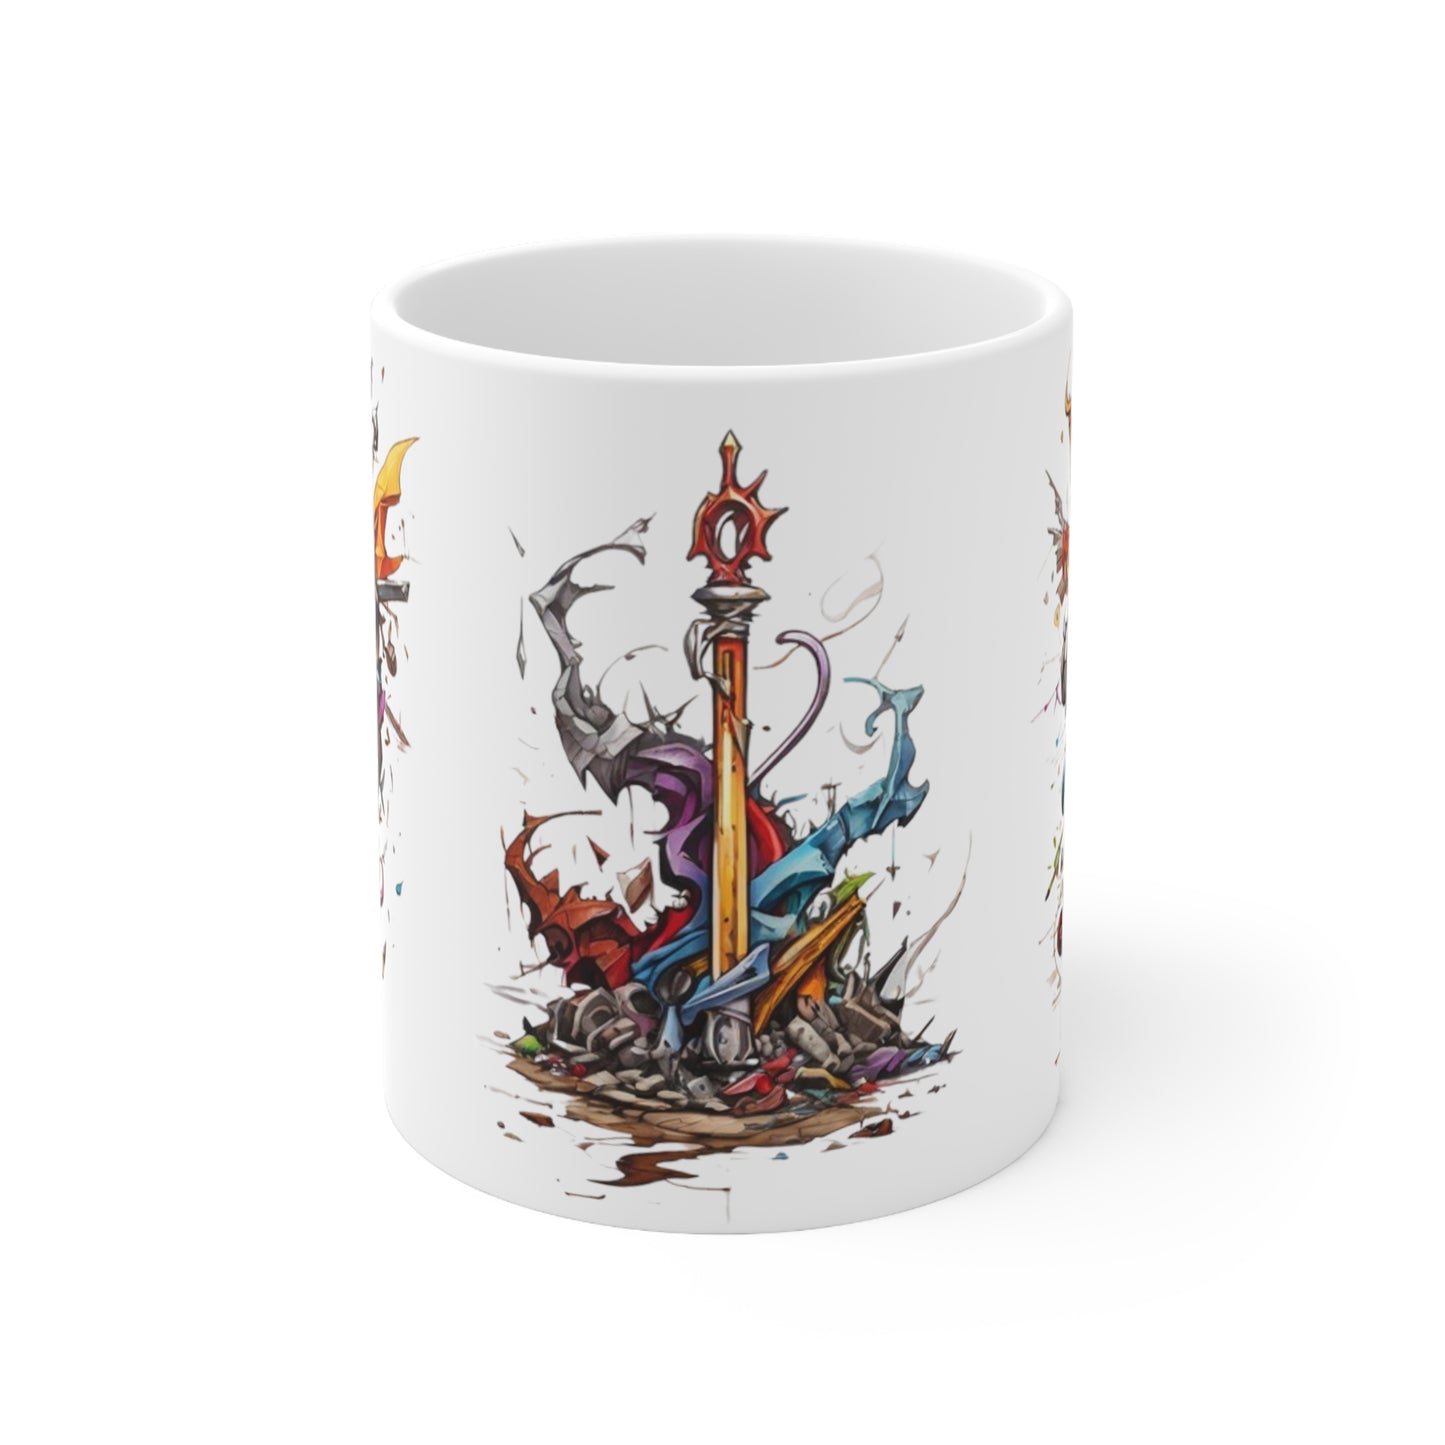 Colourful Sword Artwork Mug - Ceramic Coffee Mug 11oz